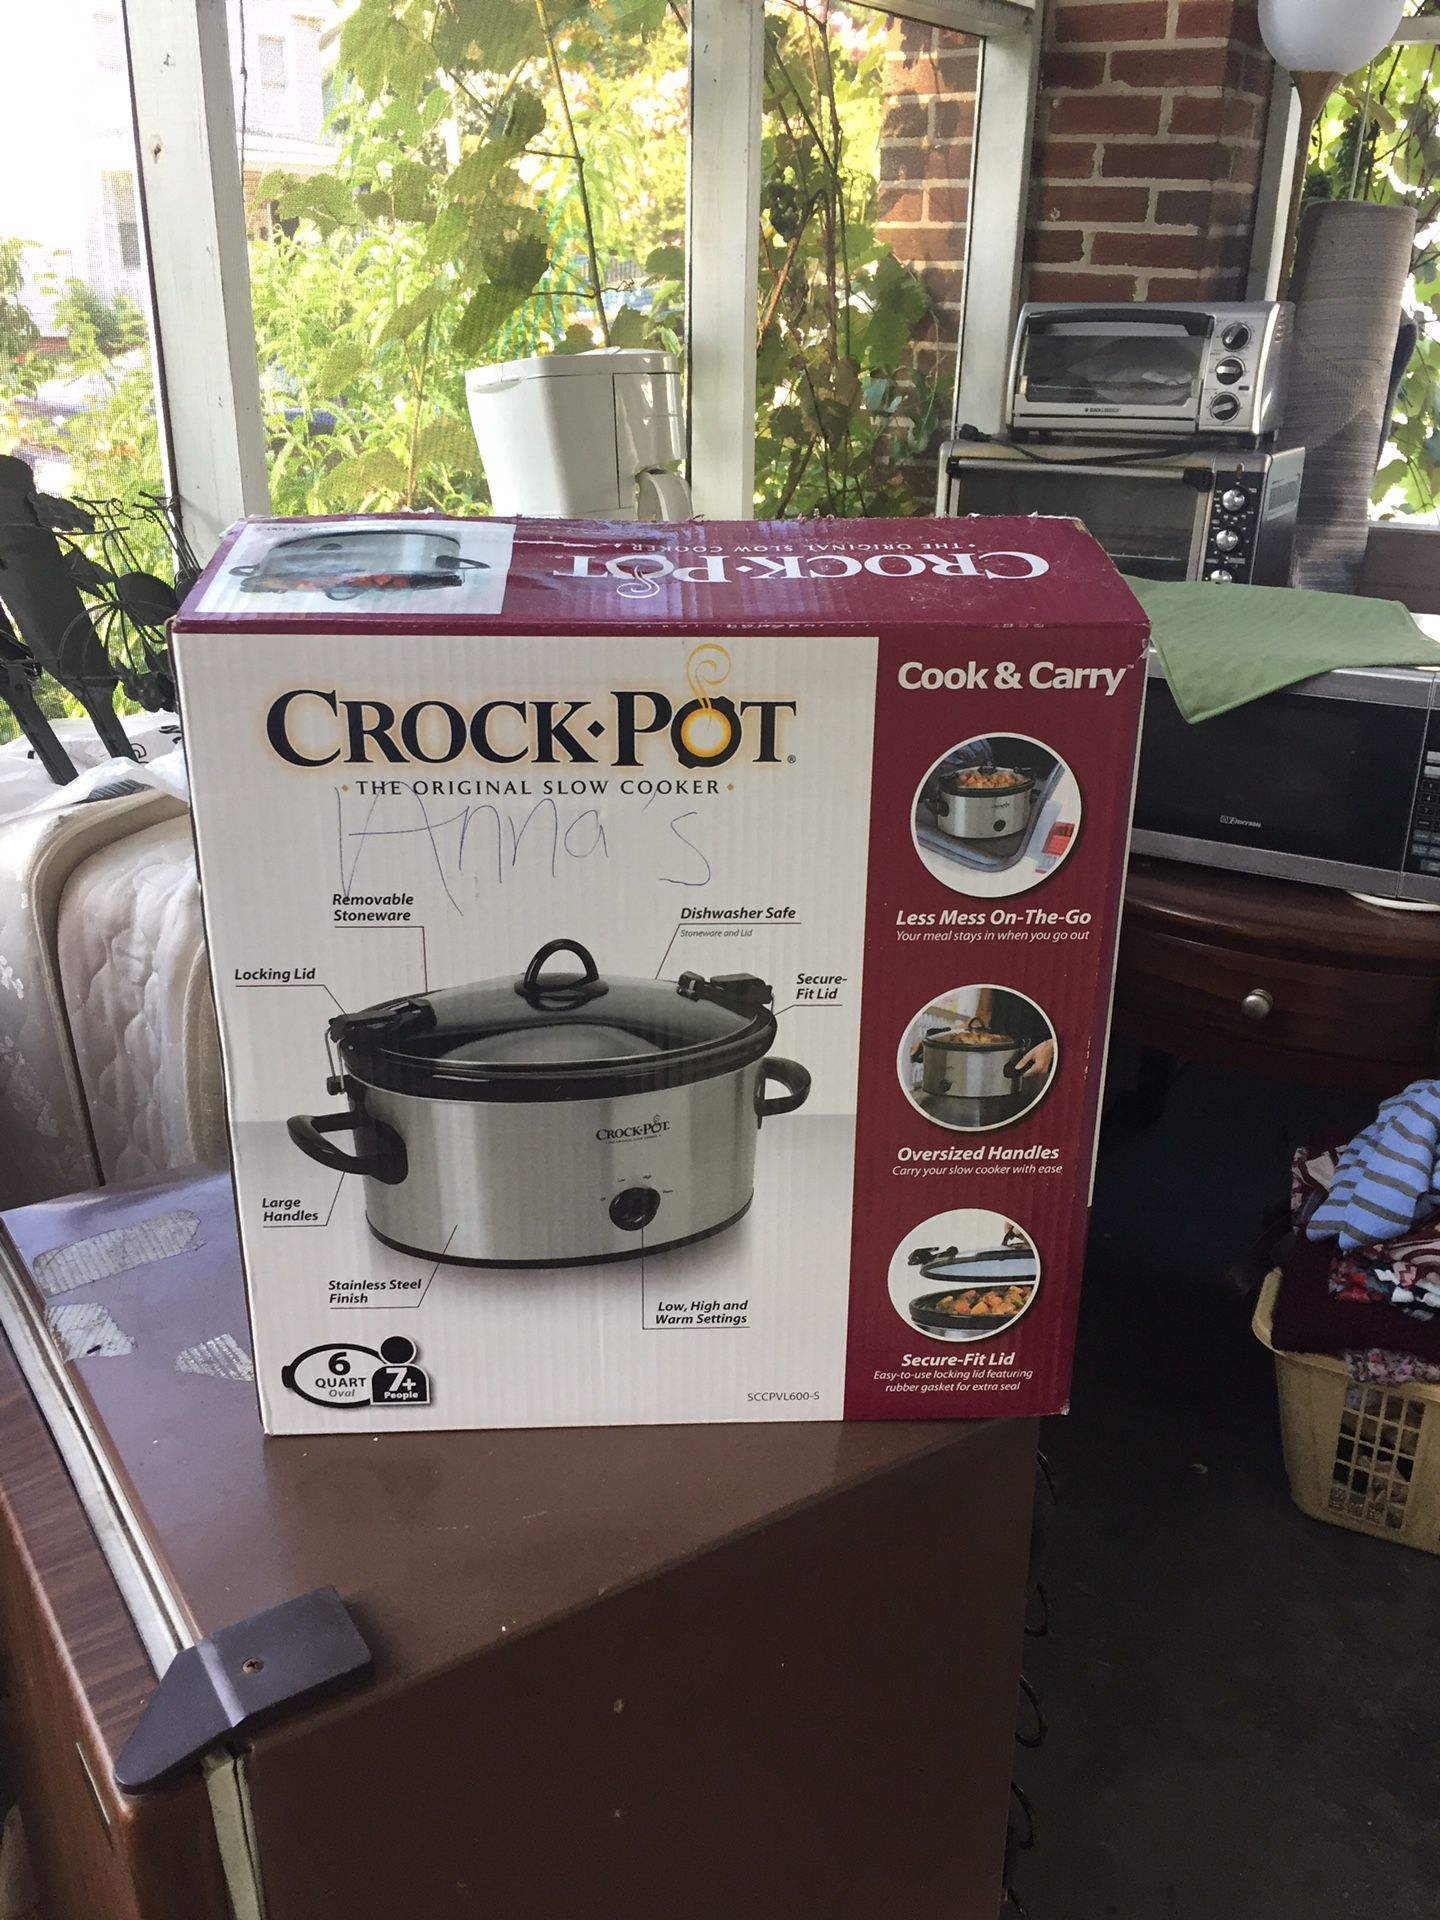 Crock pot new new